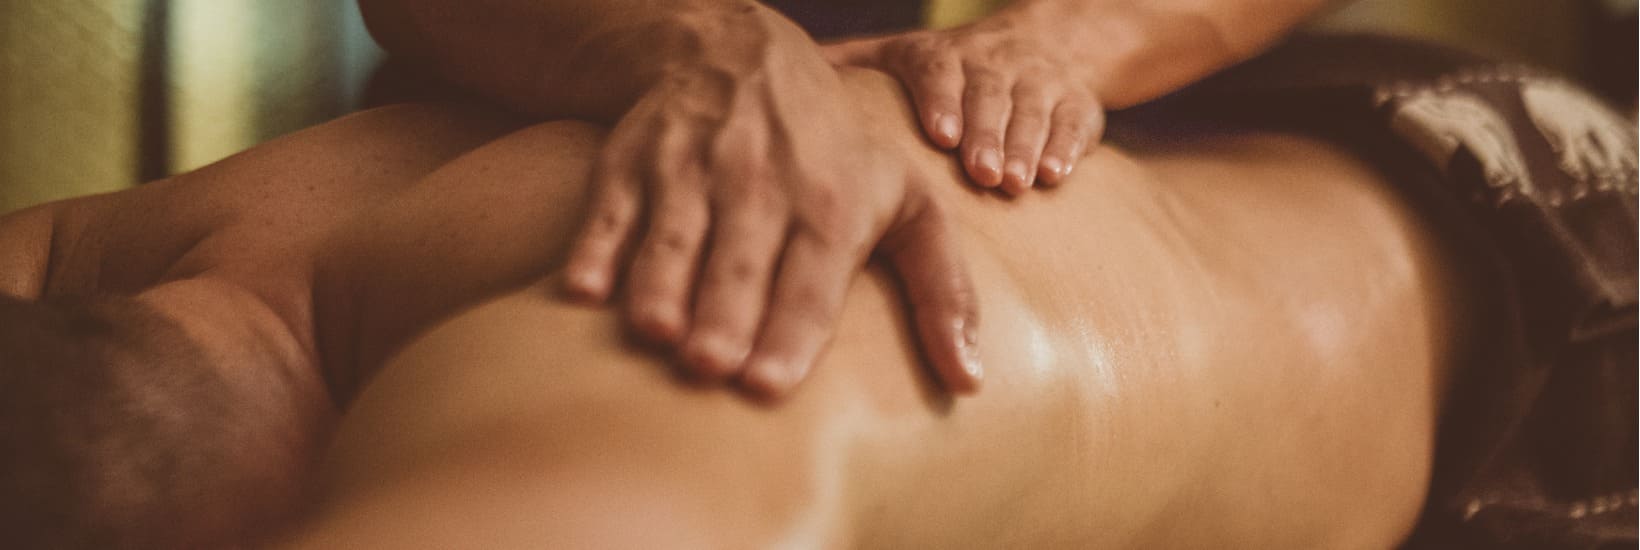 Erotische Massagen: Die Arten gibt es und so findest du heraus, was für dich die Richtige ist!